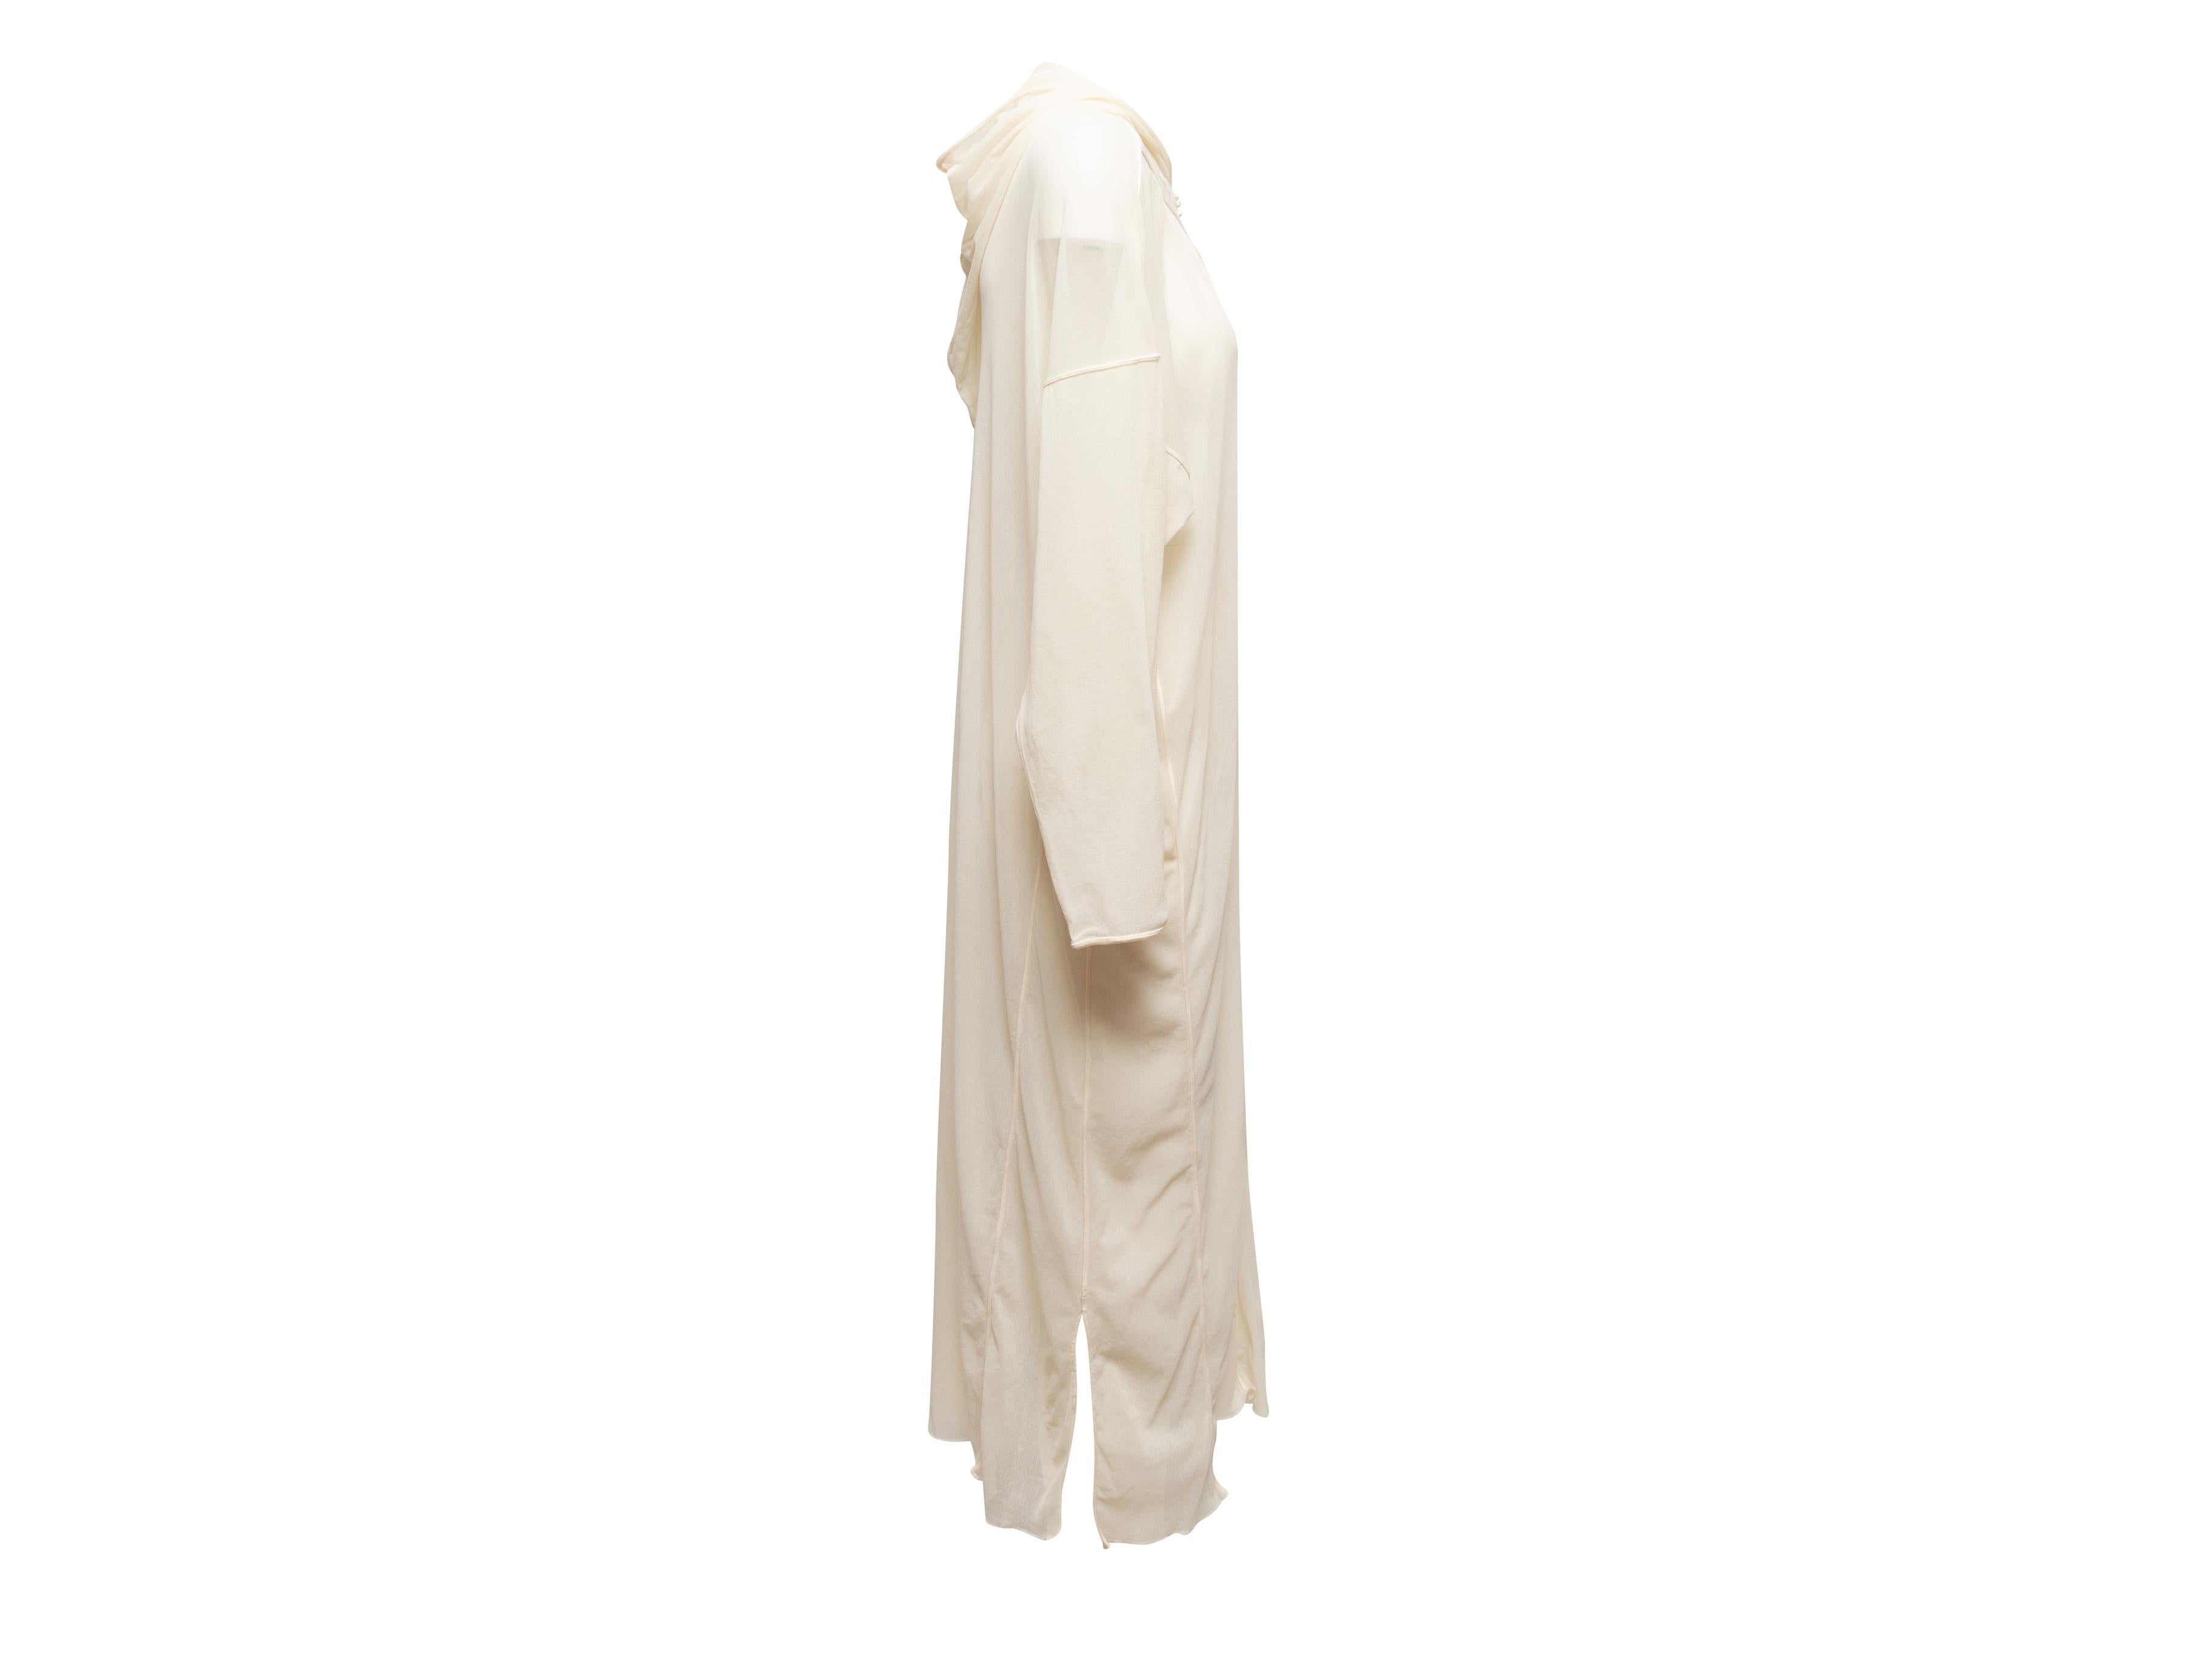 Détails du produit : Robe-couverture à capuche en maille blanche par Jean Paul Gaultier Soleil. Trou de serrure au niveau du buste. Manches longues. Poitrine 46